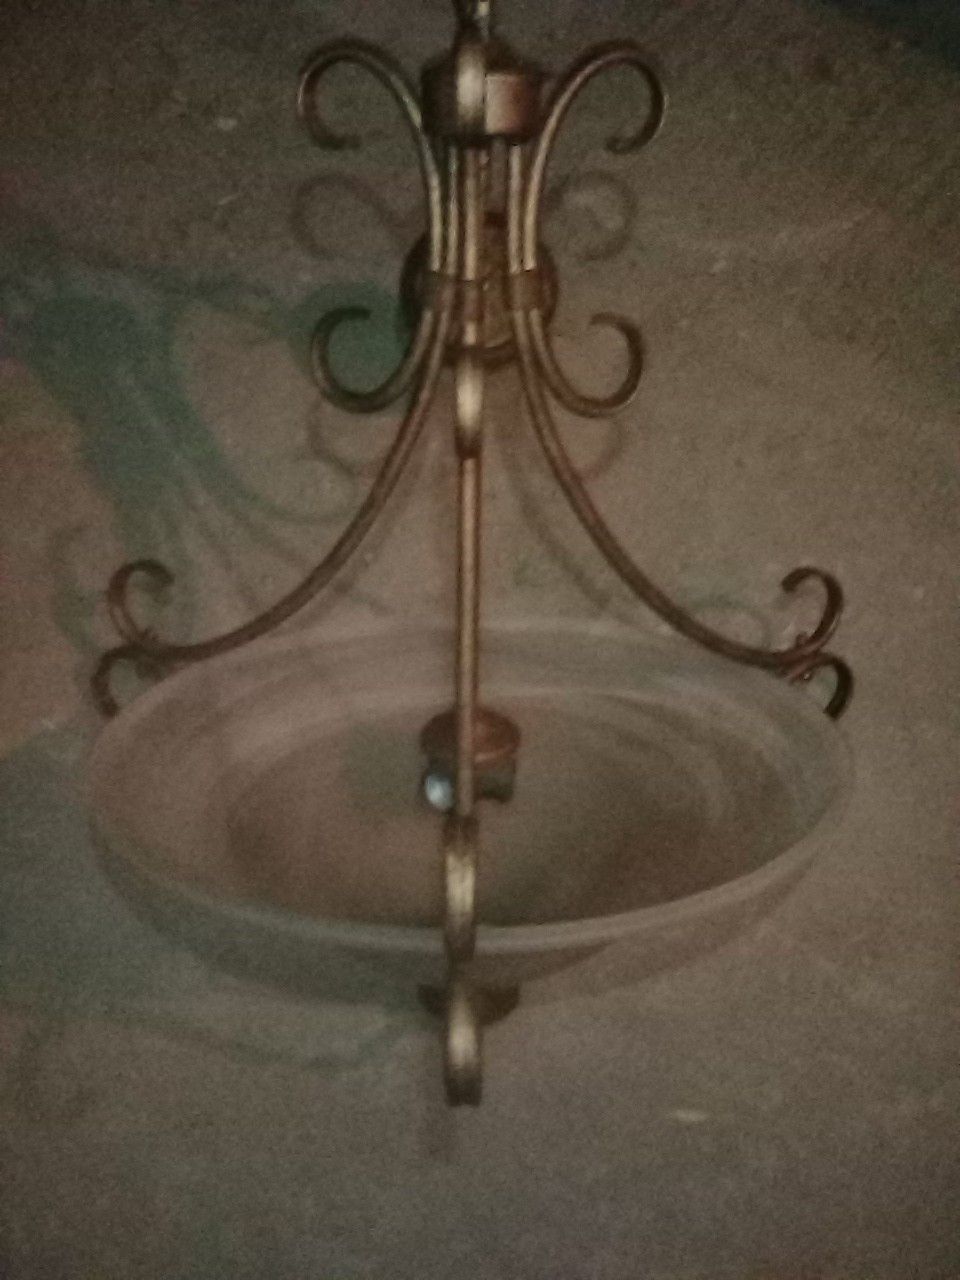 Nice chandelier